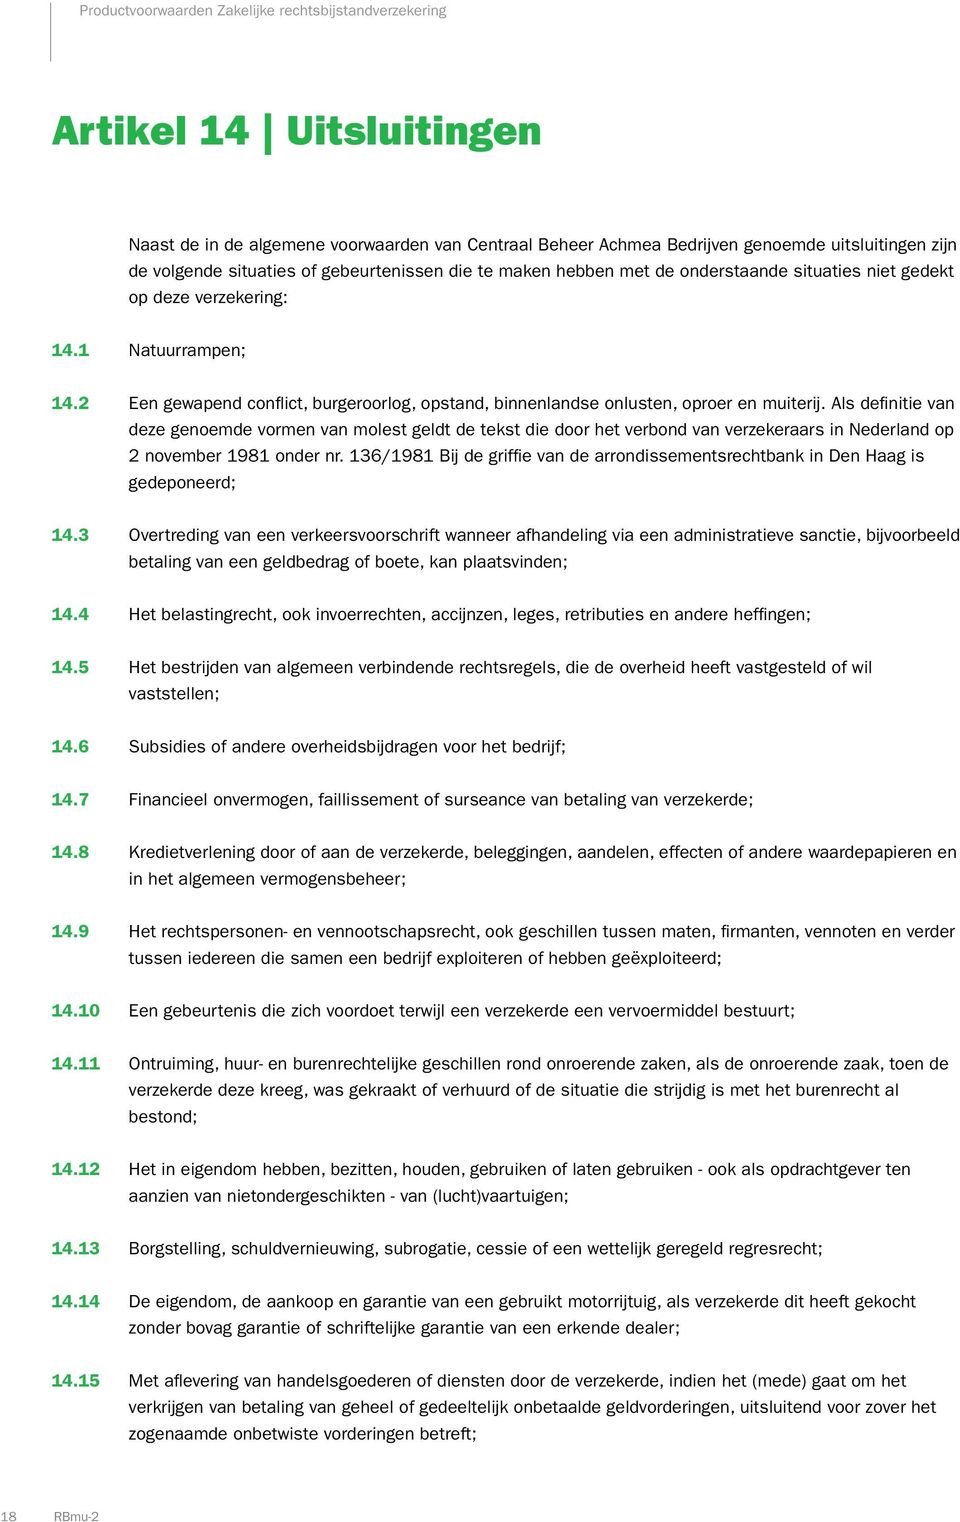 Als definitie van deze genoemde vormen van molest geldt de tekst die door het verbond van verzekeraars in Nederland op 2 november 1981 onder nr.